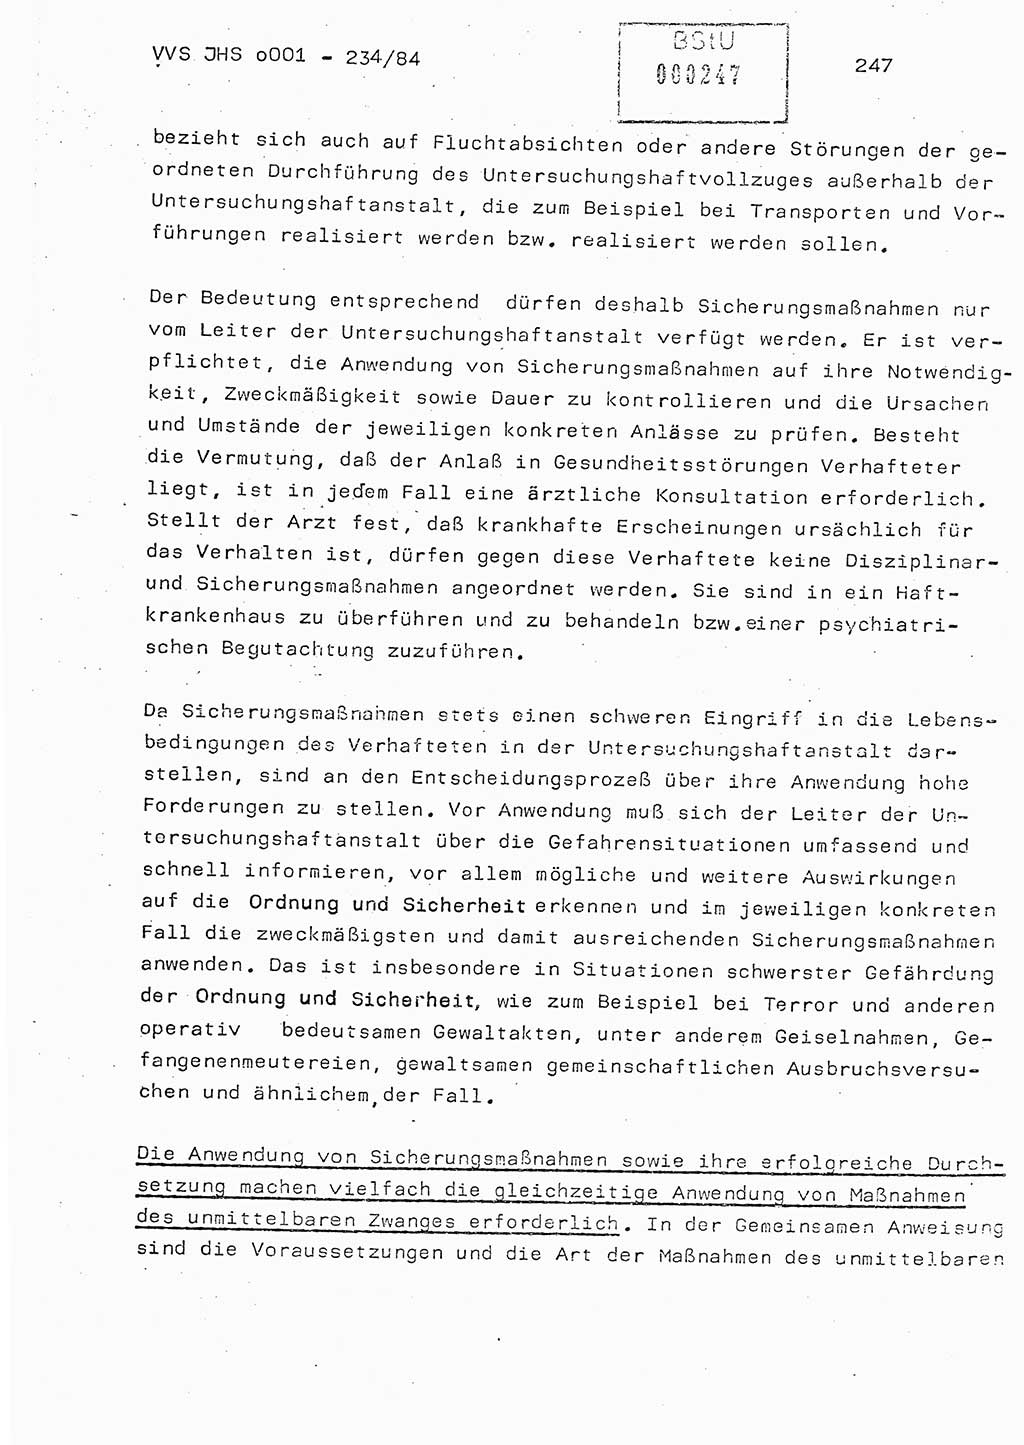 Dissertation Oberst Siegfried Rataizick (Abt. ⅩⅣ), Oberstleutnant Volkmar Heinz (Abt. ⅩⅣ), Oberstleutnant Werner Stein (HA Ⅸ), Hauptmann Heinz Conrad (JHS), Ministerium für Staatssicherheit (MfS) [Deutsche Demokratische Republik (DDR)], Juristische Hochschule (JHS), Vertrauliche Verschlußsache (VVS) o001-234/84, Potsdam 1984, Seite 247 (Diss. MfS DDR JHS VVS o001-234/84 1984, S. 247)